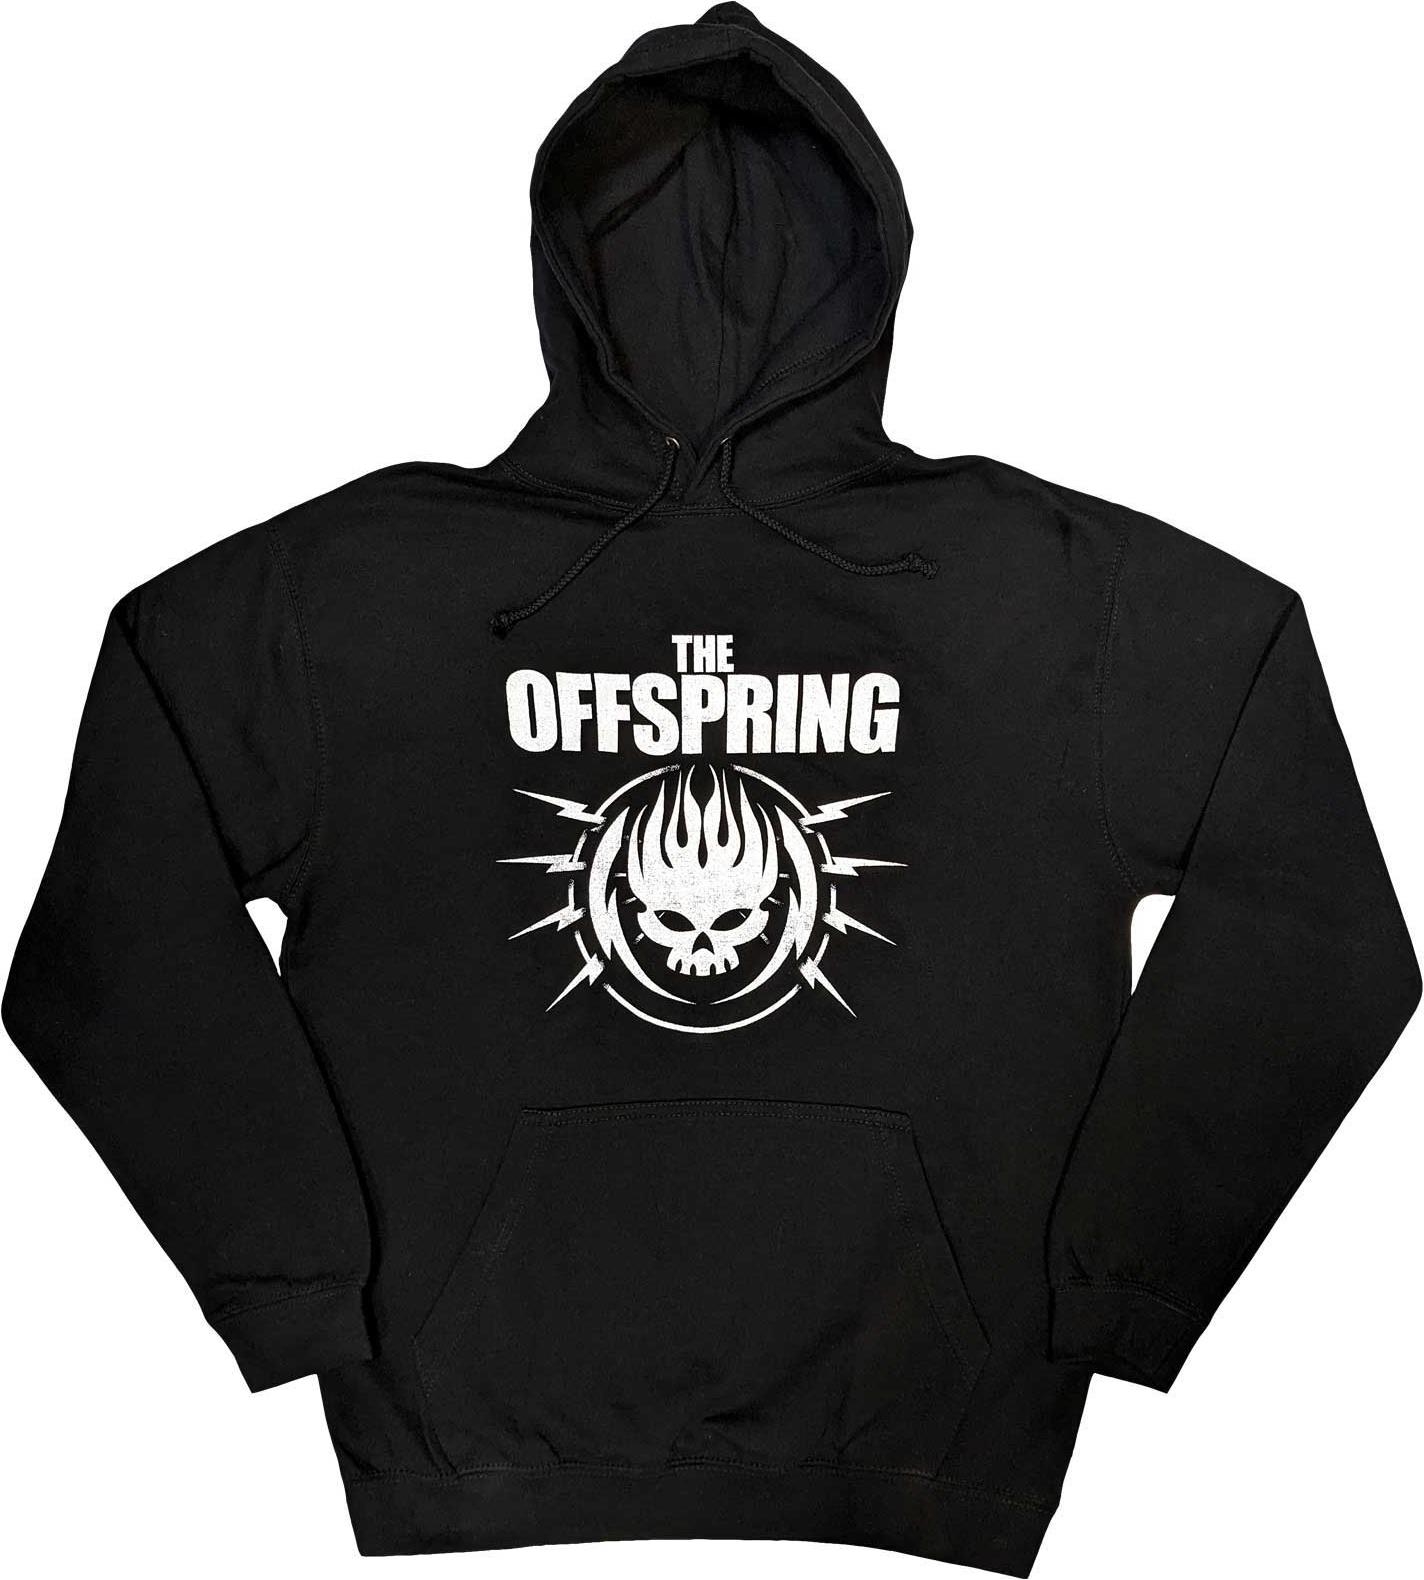 Abbigliamento Offspring: Bolt Logo (Felpa Con Cappuccio Unisex Tg.L) NUOVO SIGILLATO SUBITO DISPONIBILE